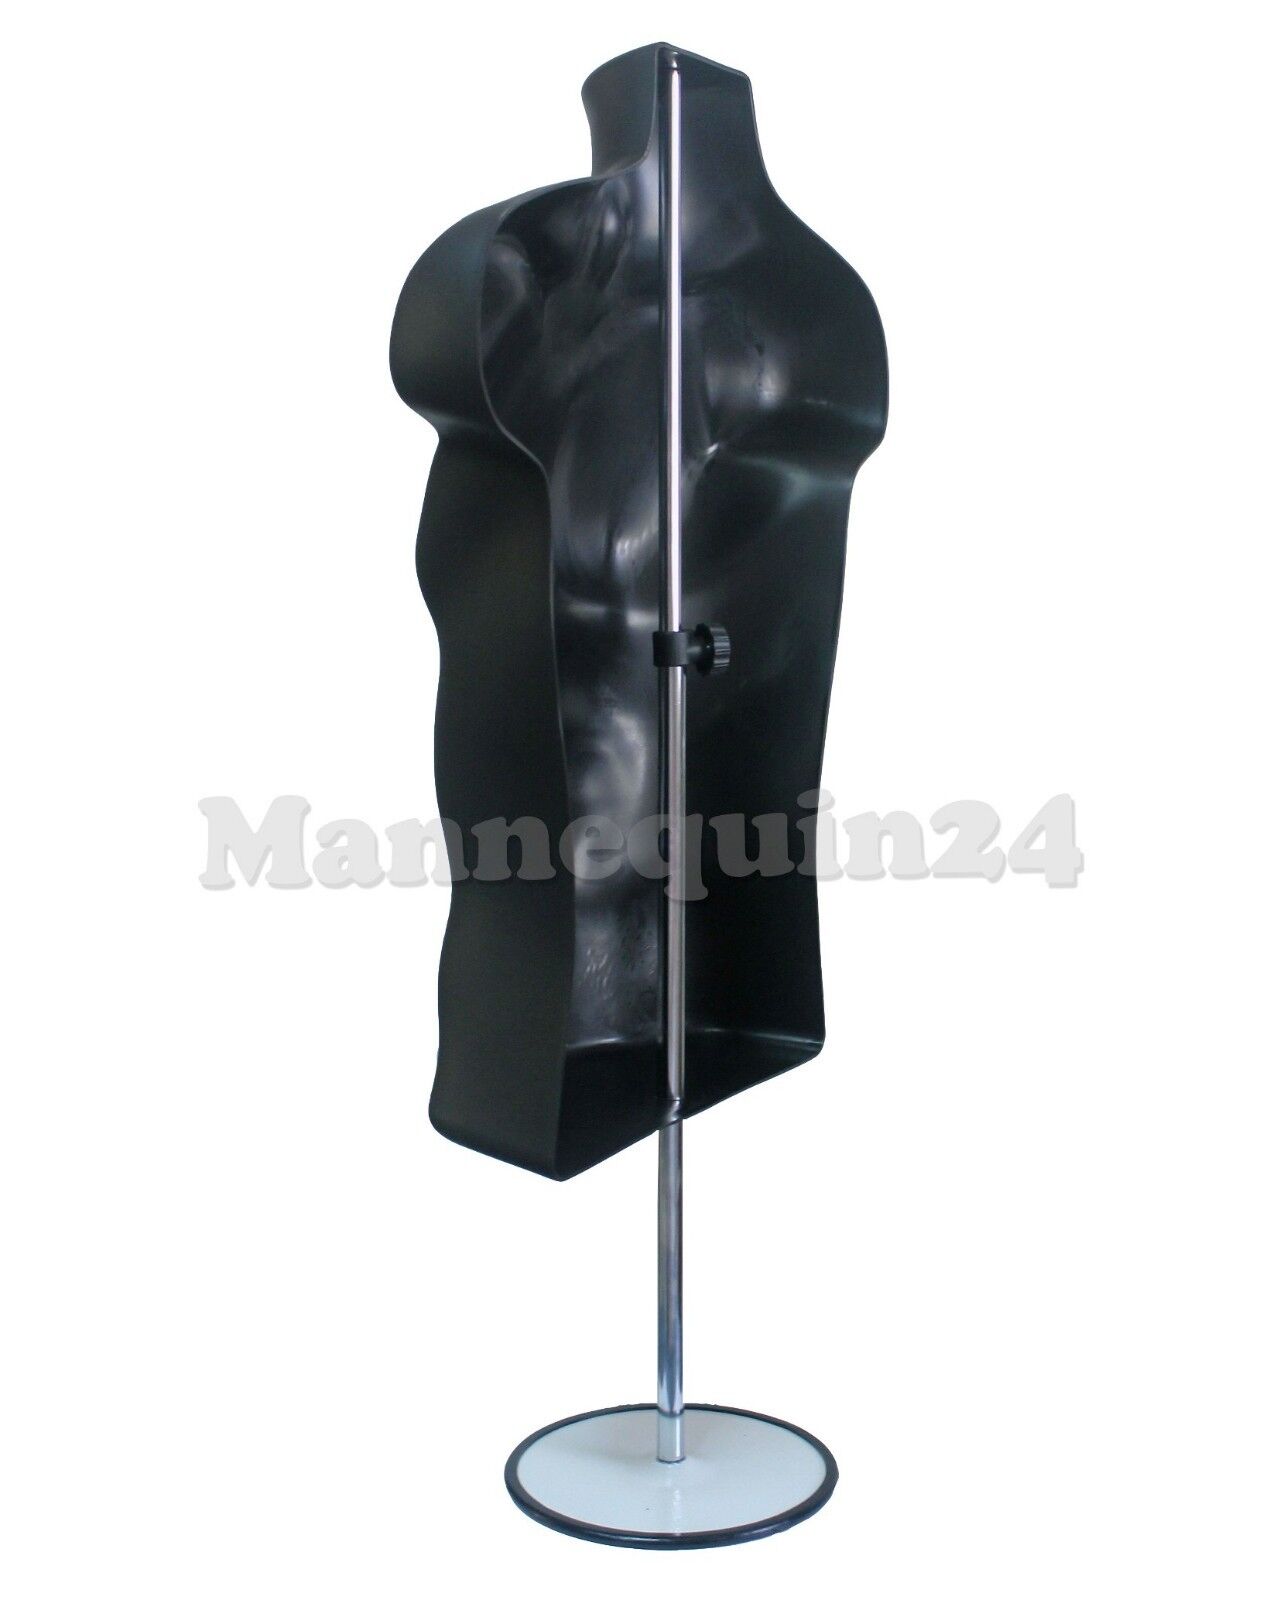 Male Mannequin Torso Form - Black Dress Form w/ Stand & Hanging Hook  